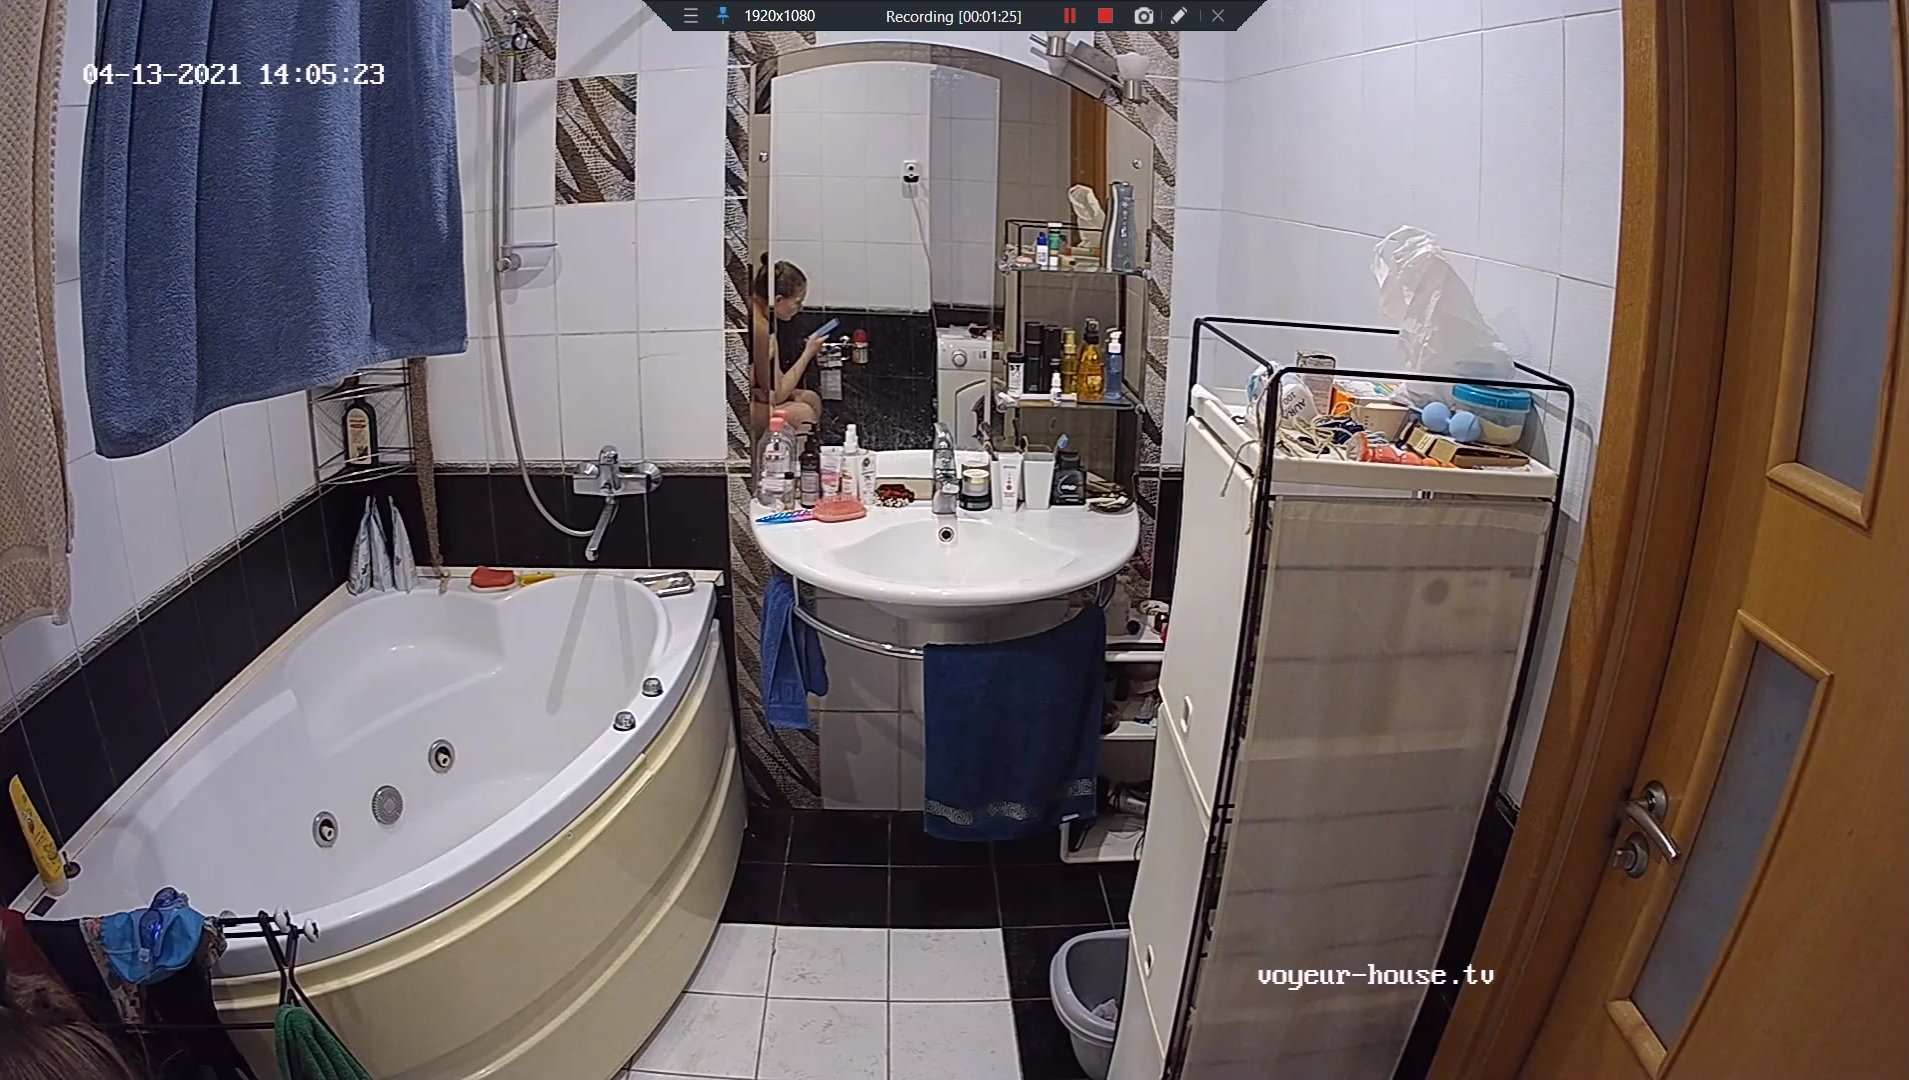 shower girls videos voyeur